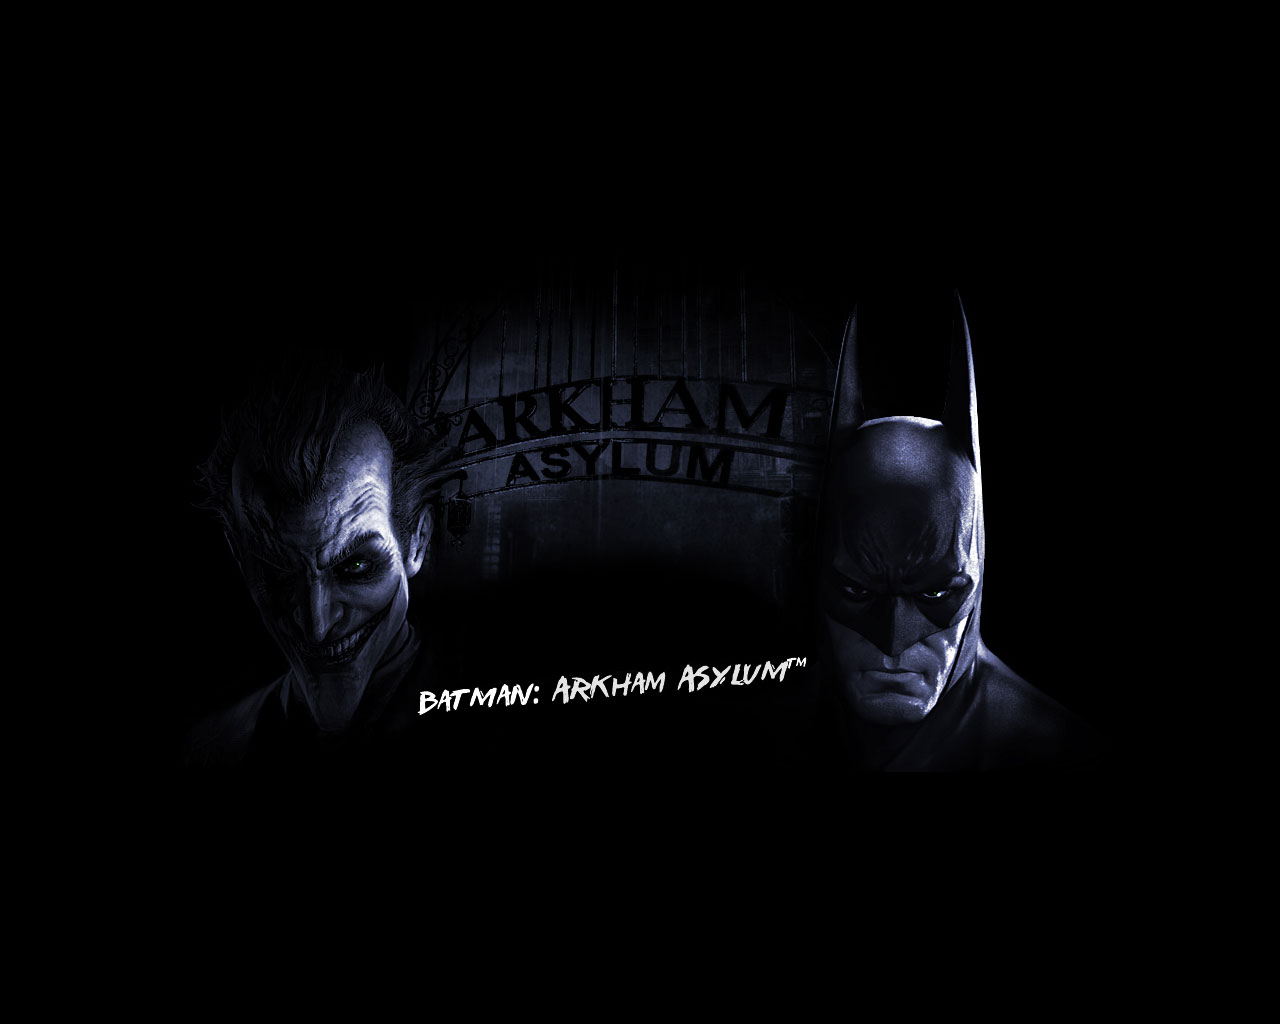 Batman: Arkham Asylum Batman: Arkham Asylum Wallpaper Wallpaper - Batman: Arkham  Asylum Batman: Arkham Asylum Wallpaper Backgrounds (1280 x 1024)